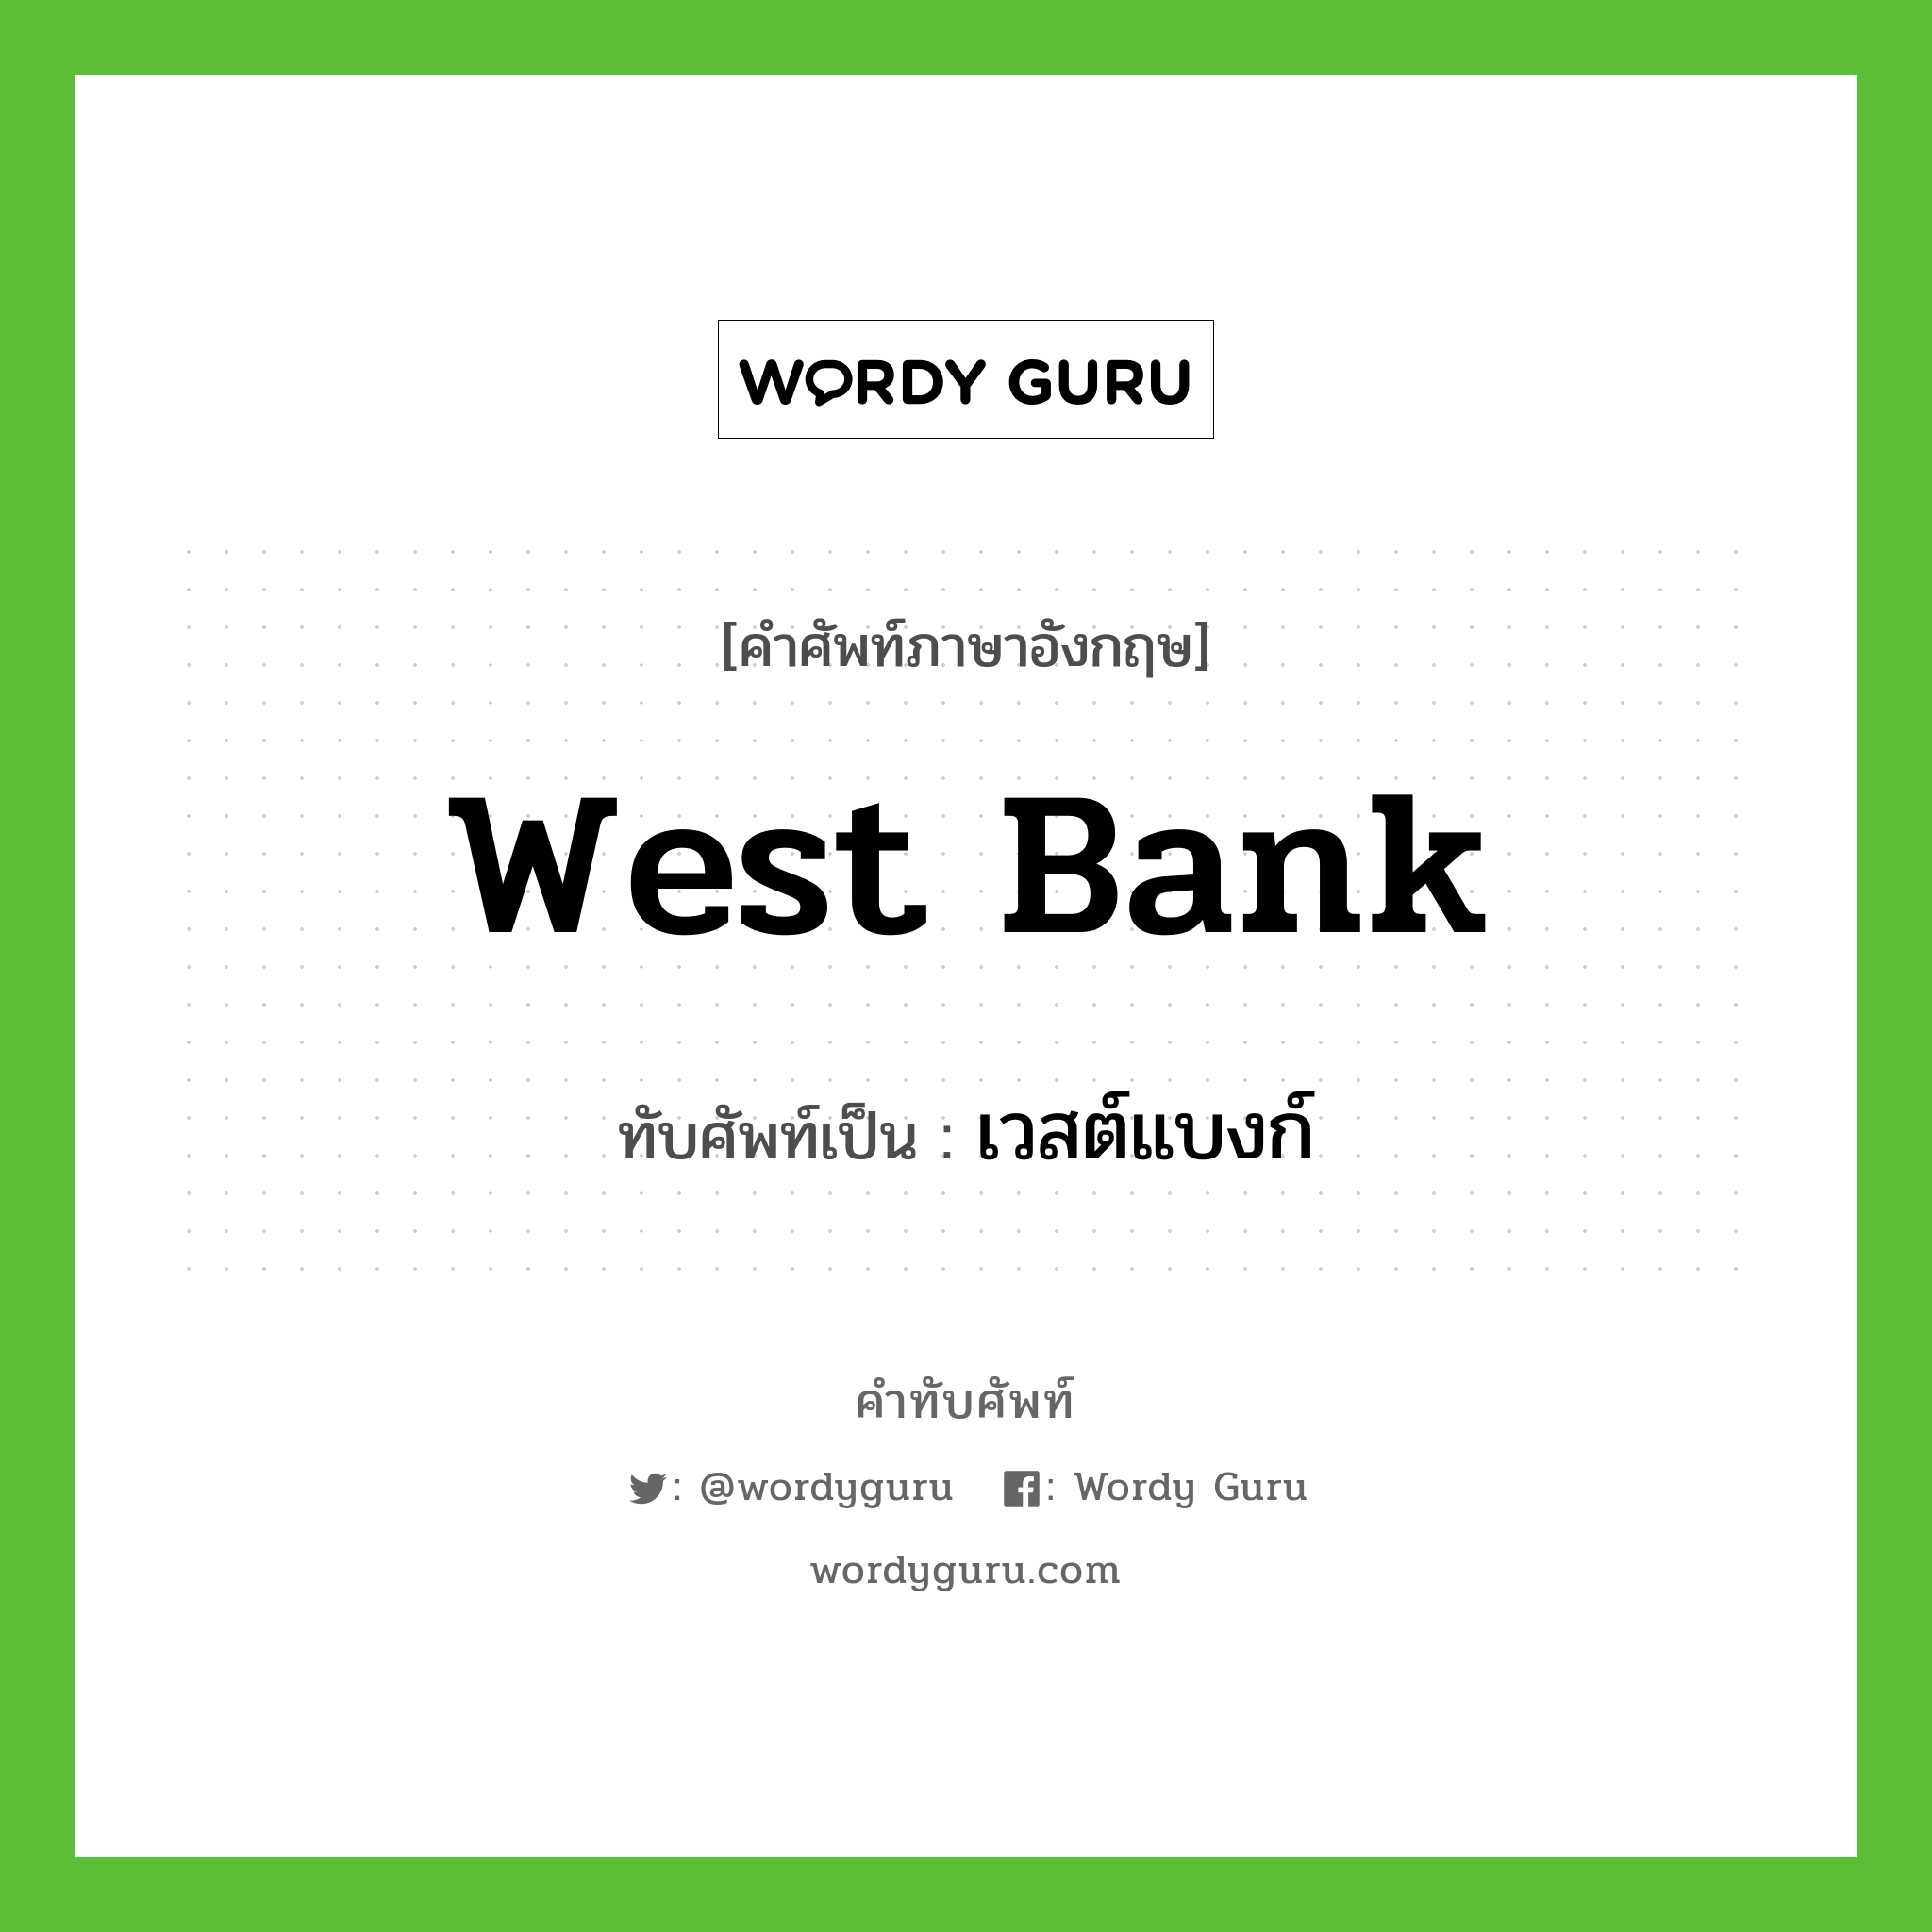 West bank เขียนเป็นคำไทยว่าอะไร?, คำศัพท์ภาษาอังกฤษ West bank ทับศัพท์เป็น เวสต์แบงก์